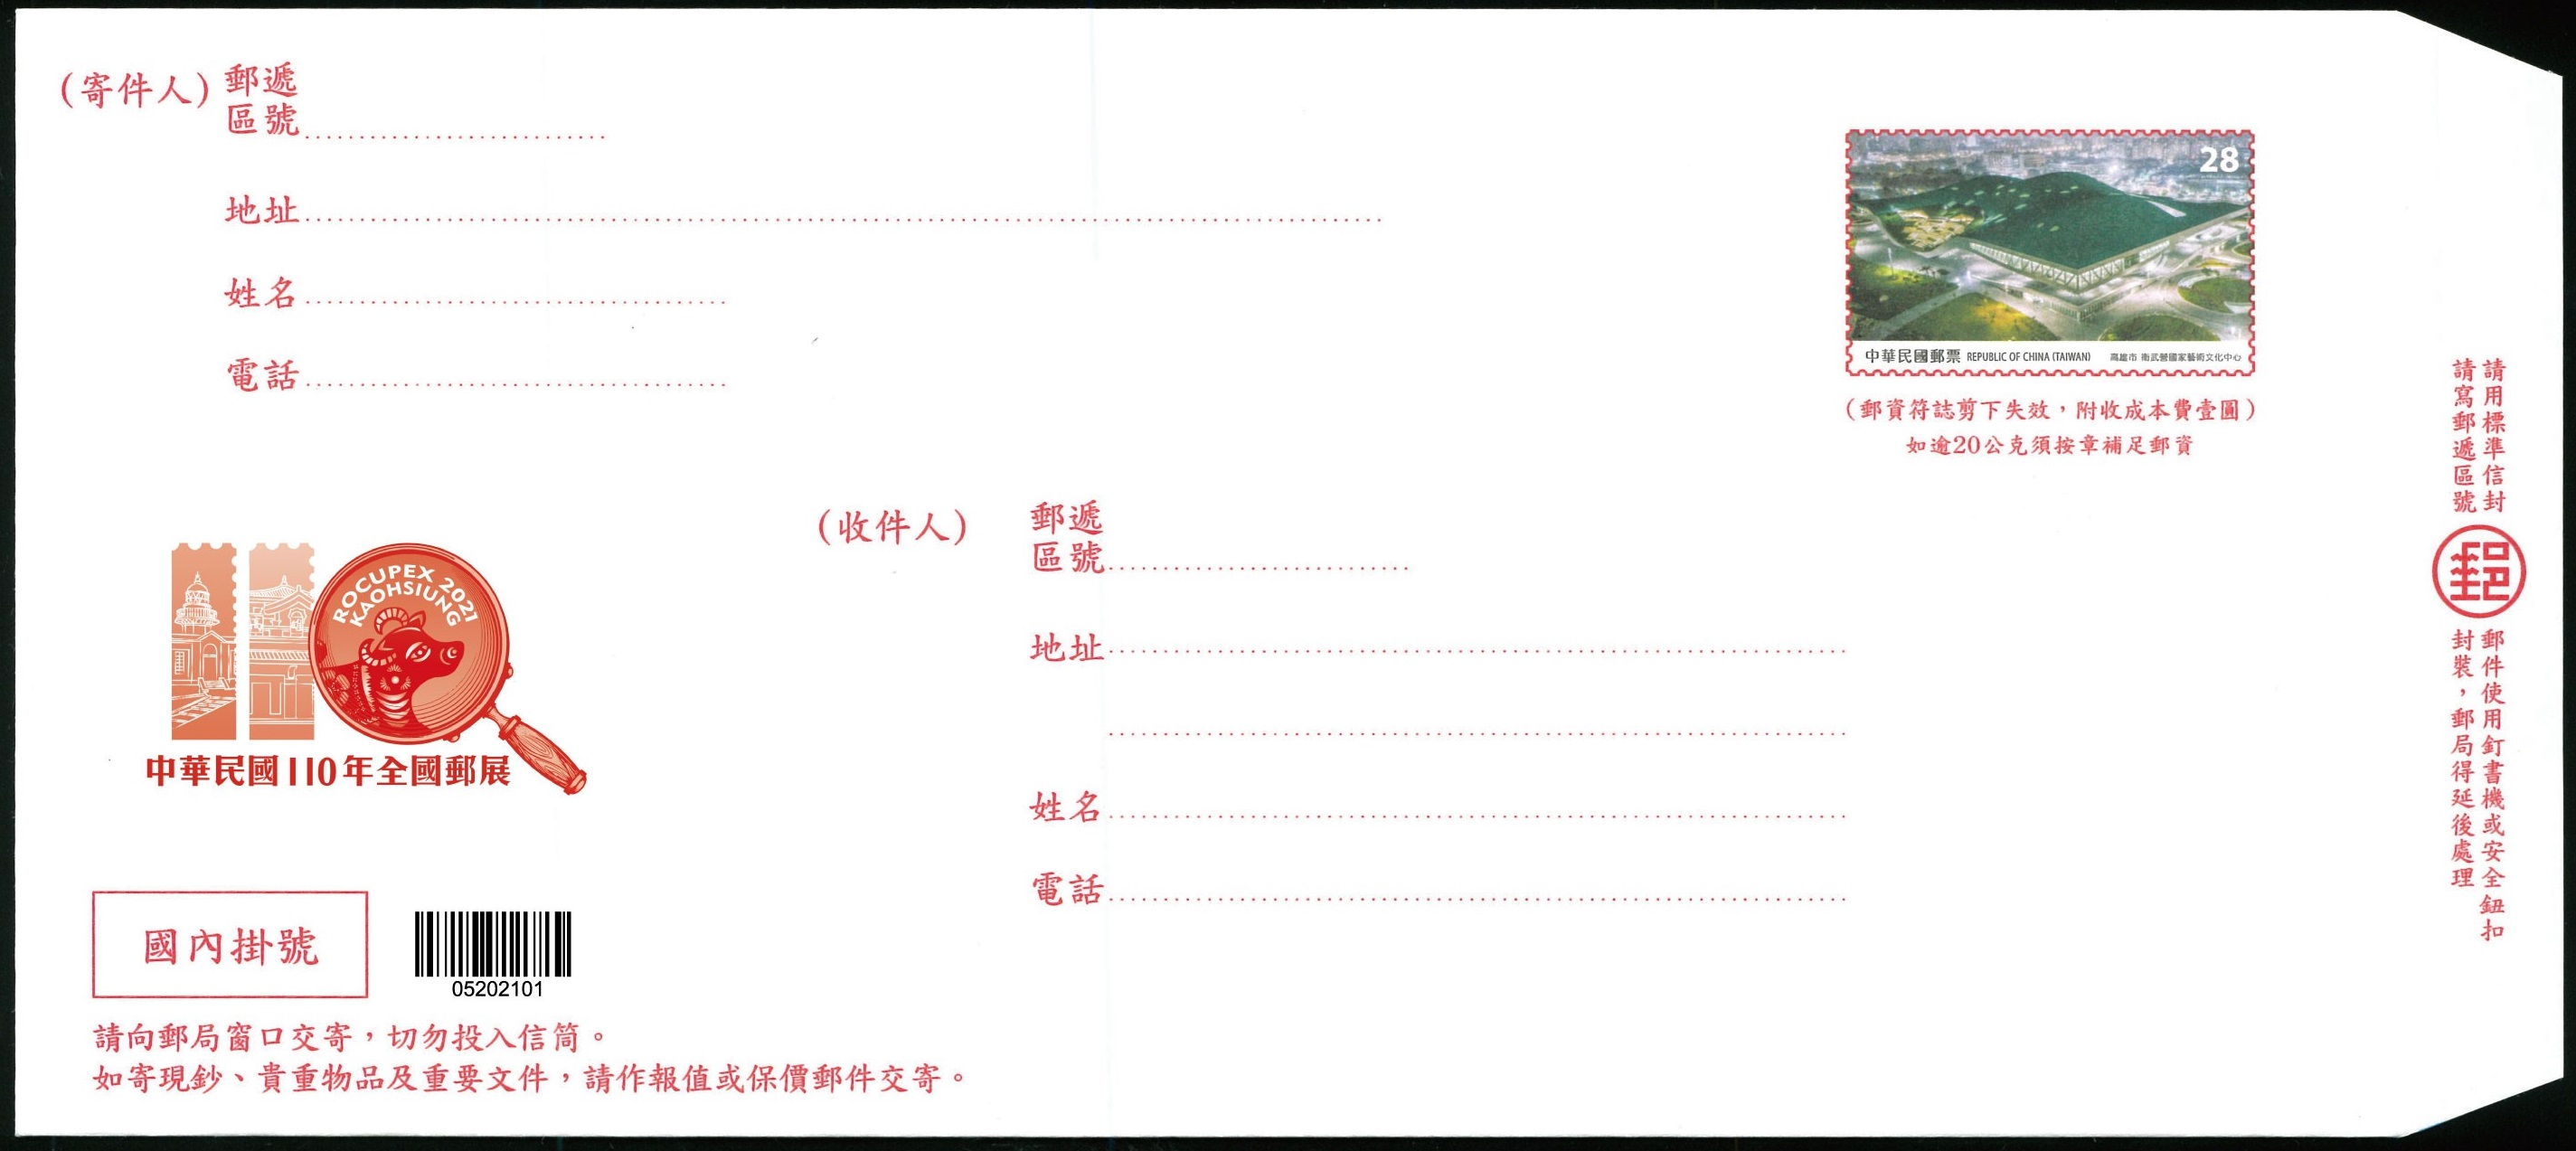 「中華民國110年全國郵展紀念掛號信封」